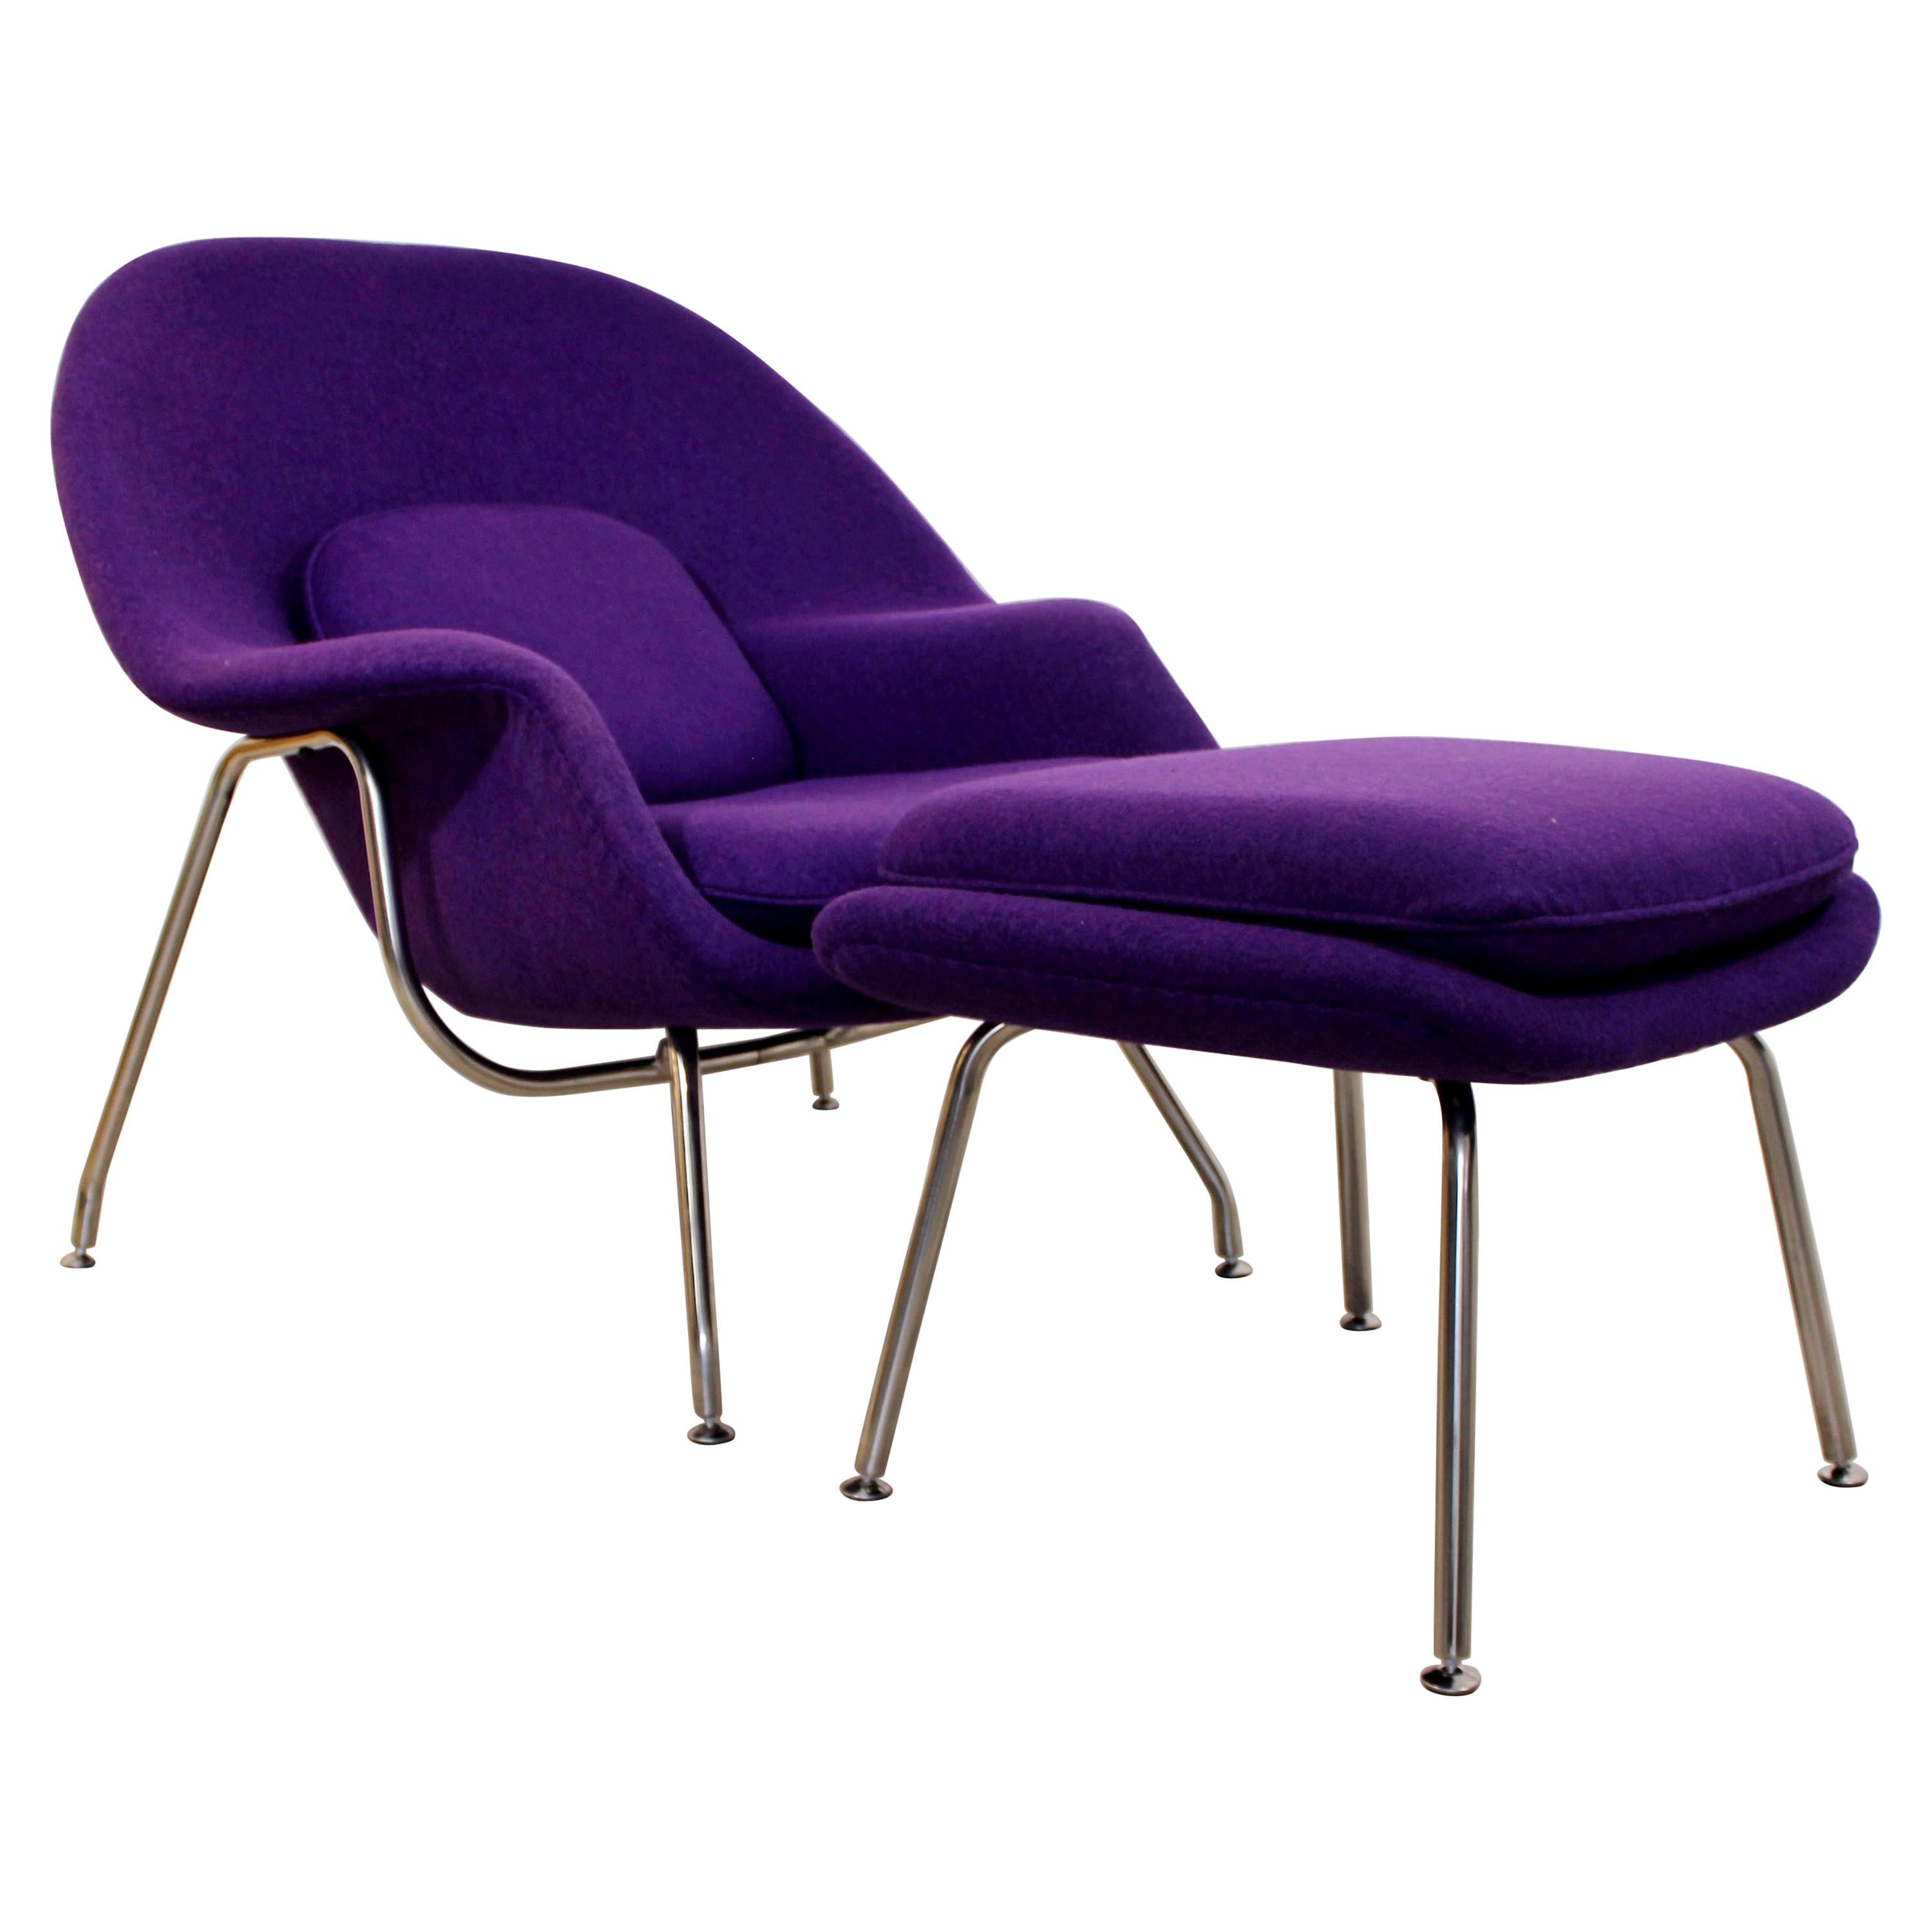 Mid-Century Modernist Purple Womb Lounge Chair Ottoman Chrome Saarinen Knoll Era